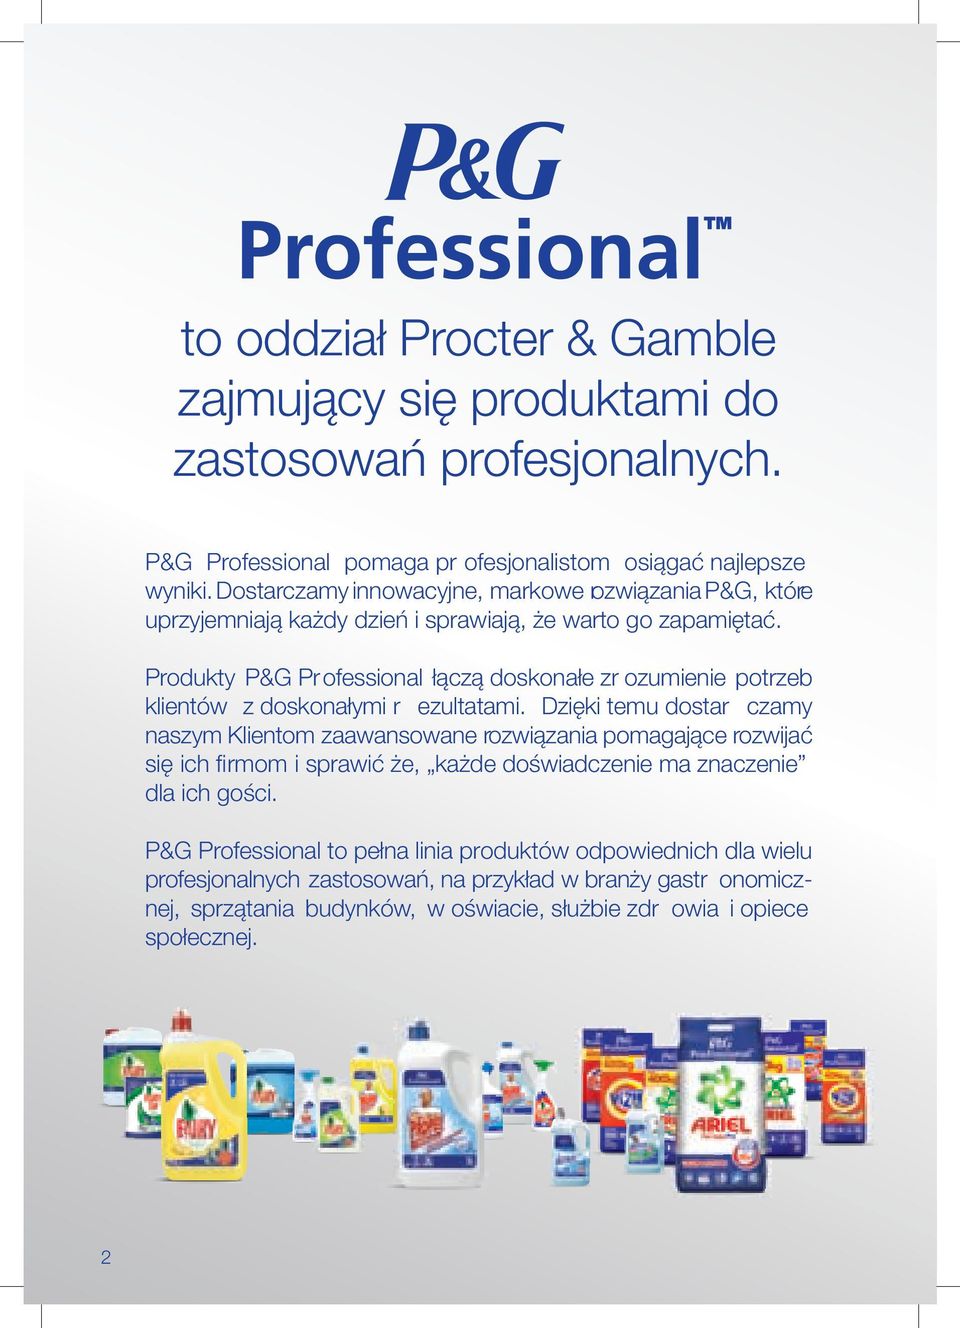 Produkty P&G Professional łączą doskonałe zr ozumienie potrzeb klientów z doskonałymi r ezultatami.